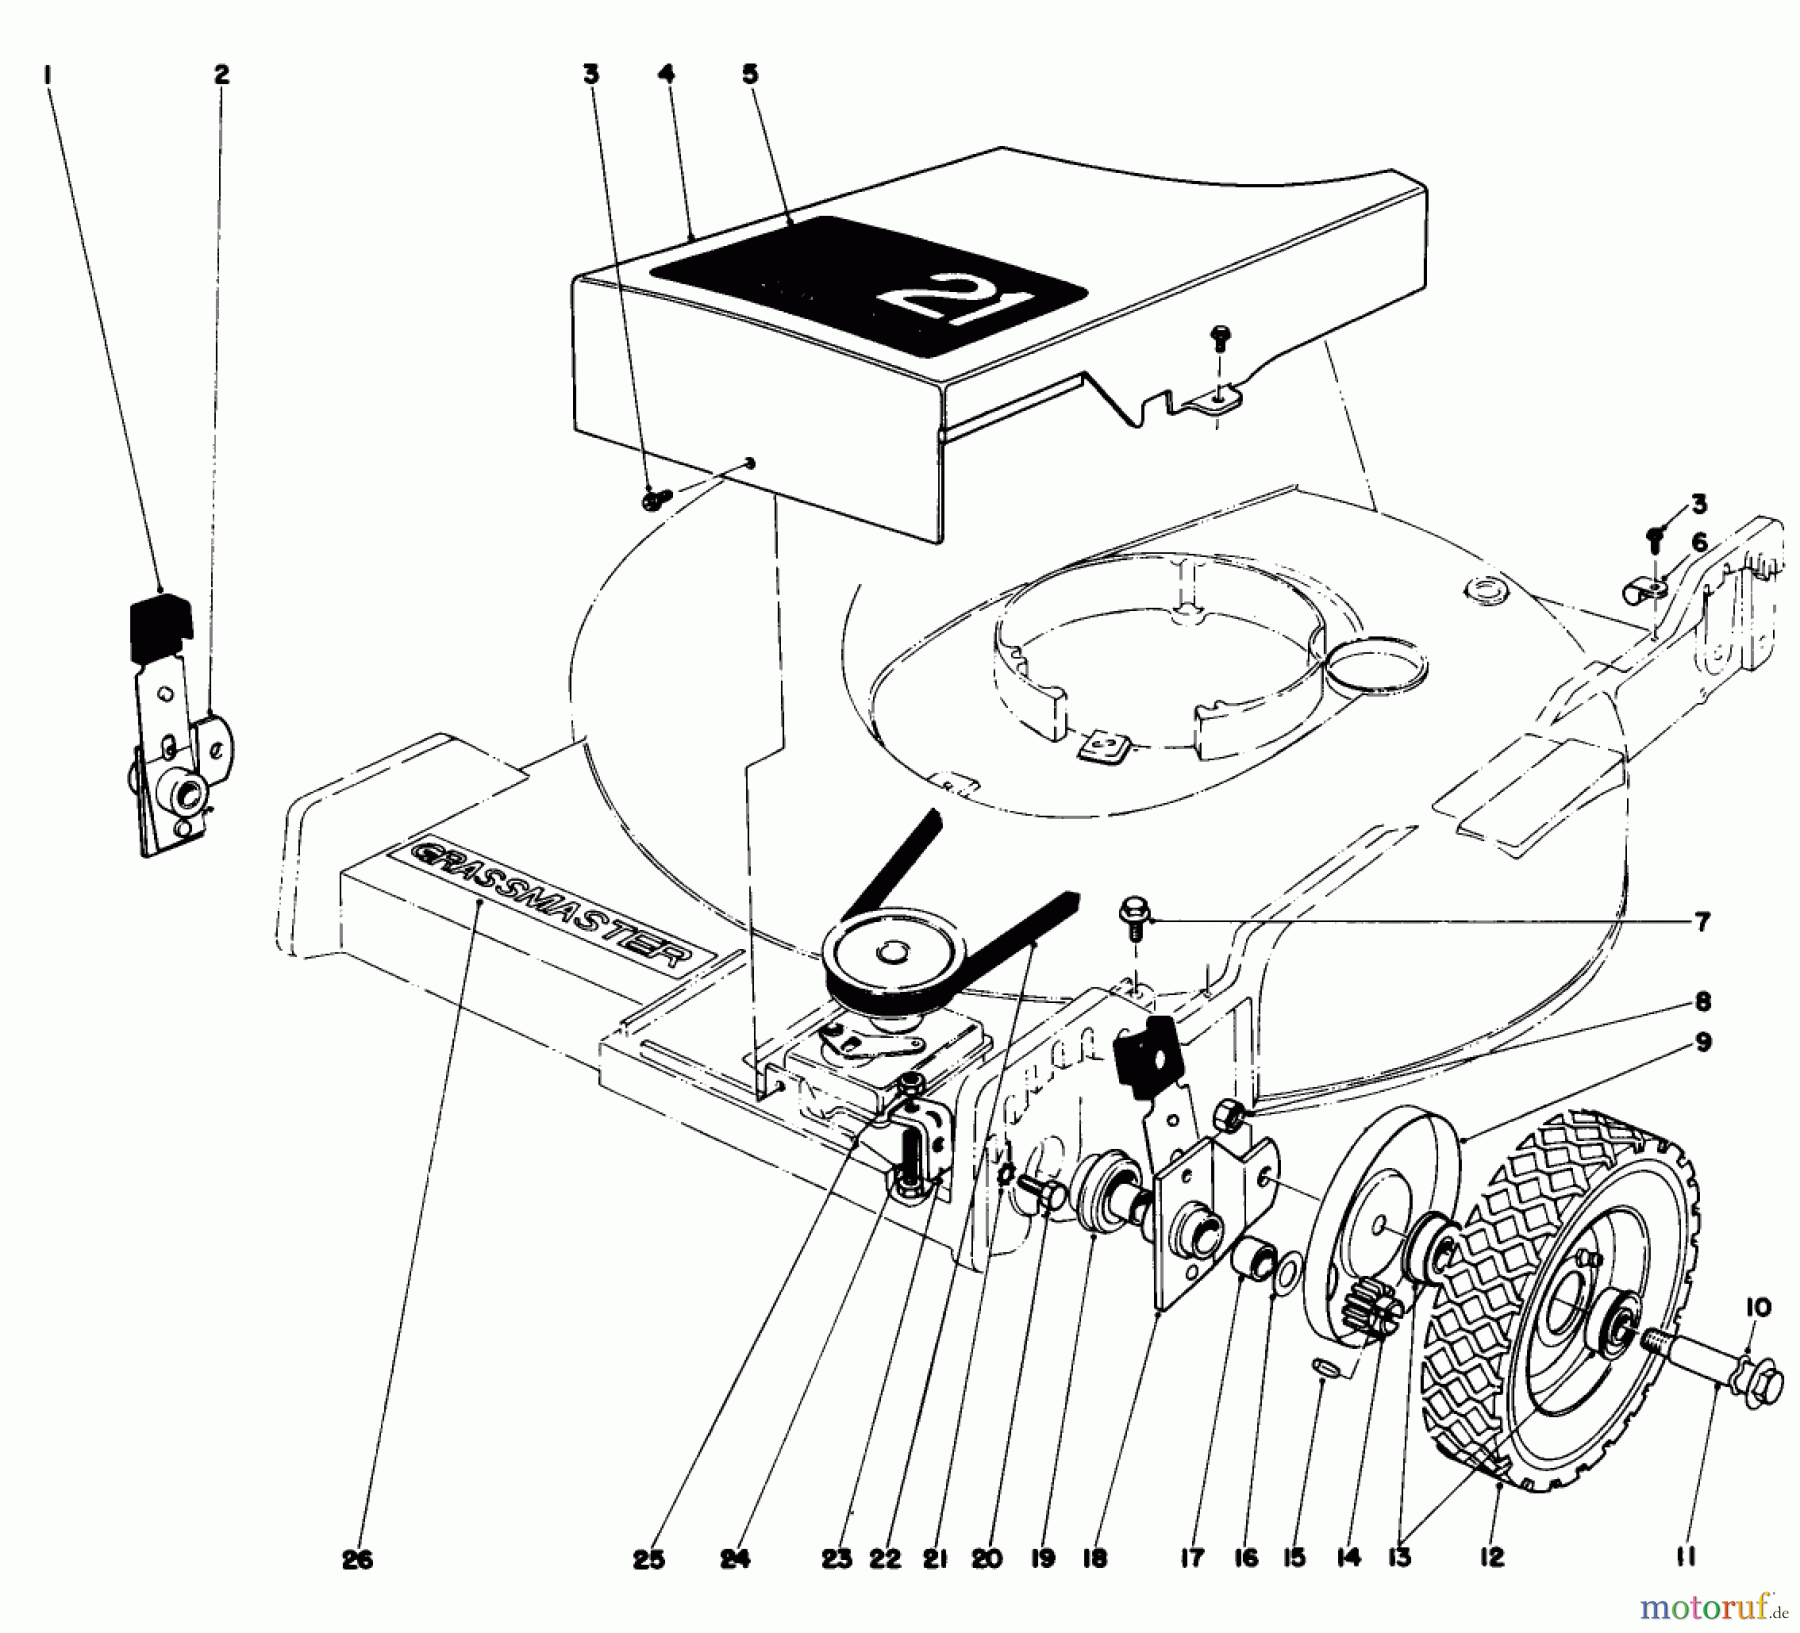  Toro Neu Mowers, Walk-Behind Seite 1 20673 - Toro Lawnmower, 1977 (7000001-7999999) FRONT WHEEL AND PIVOT ARM ASSEMBLY